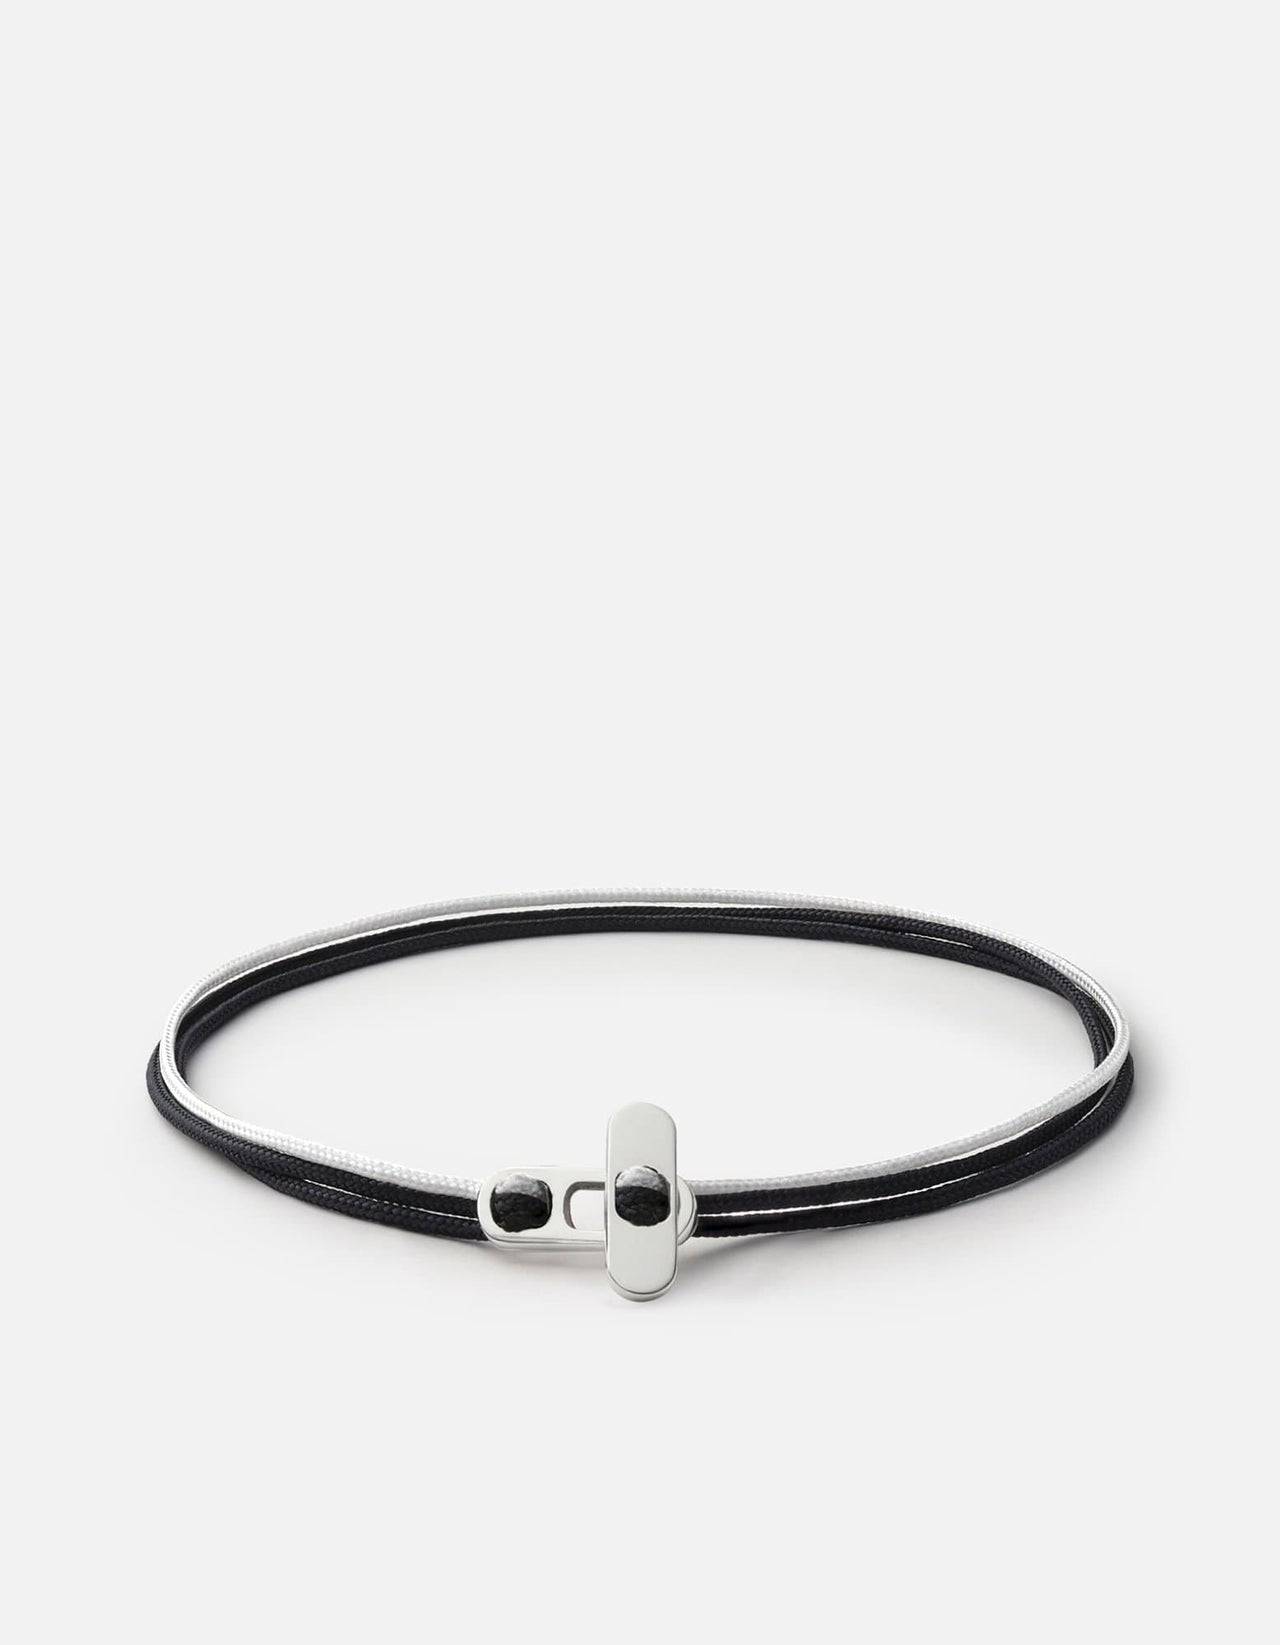 Nexus Rope Bracelet, Sterling Silver, Men's Bracelets